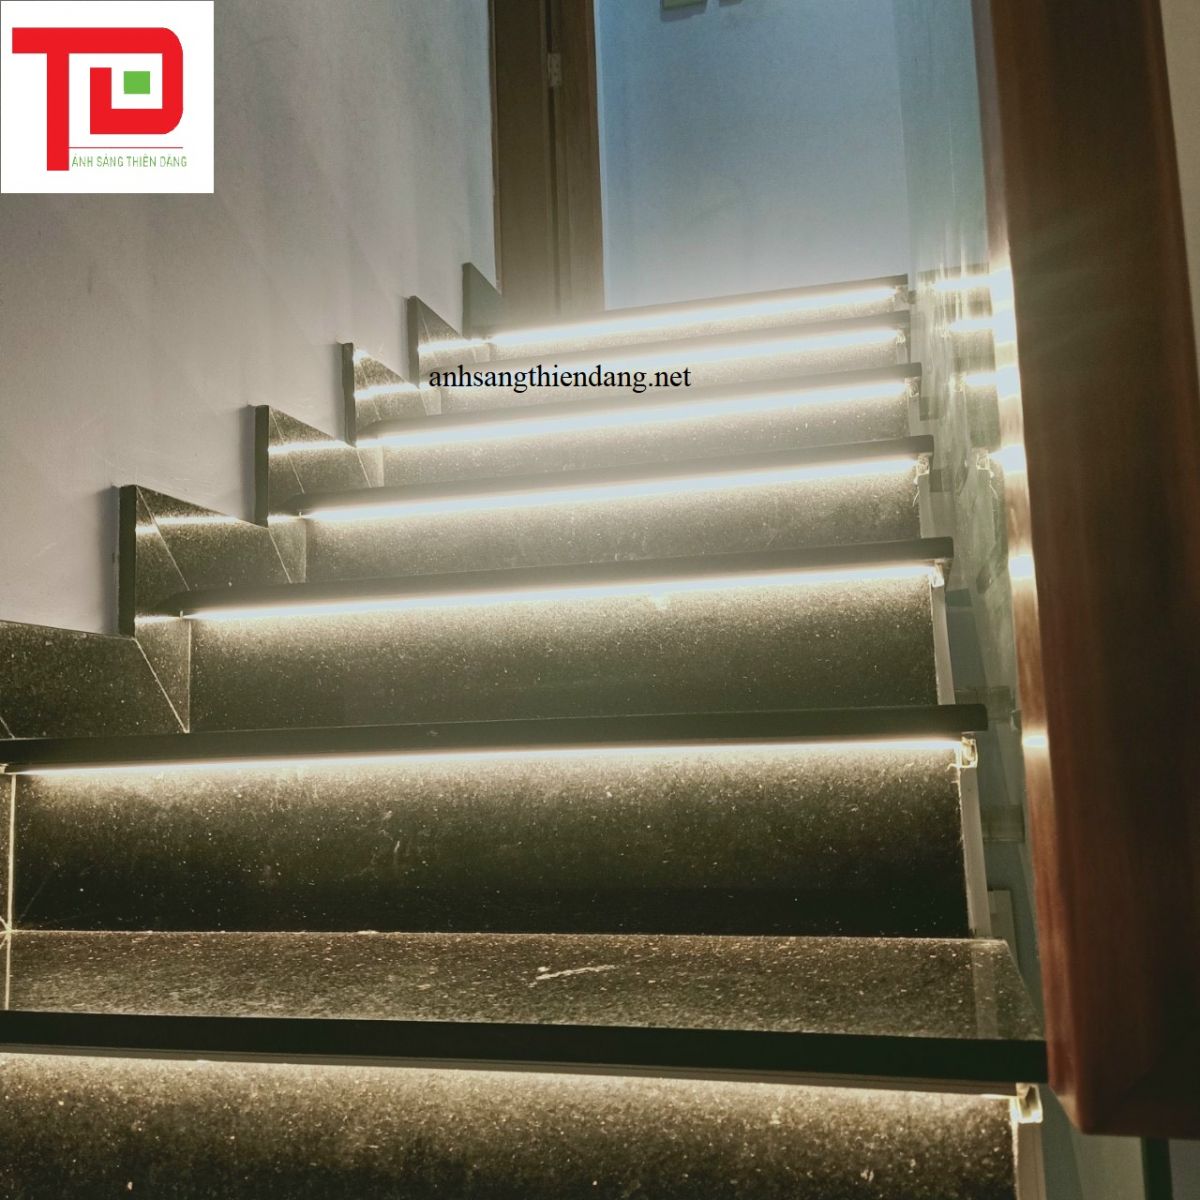 Đèn led hắt chân cầu thang giúp chiếu sáng tốt hơn, tạo ra hiệu ứng ánh sáng tuyệt đẹp và nâng cao tính thẩm mỹ cho không gian cầu thang. Với tính năng thông minh và sự độc đáo của chúng, bạn sẽ cảm thấy thật tiện lợi và ấn tượng.